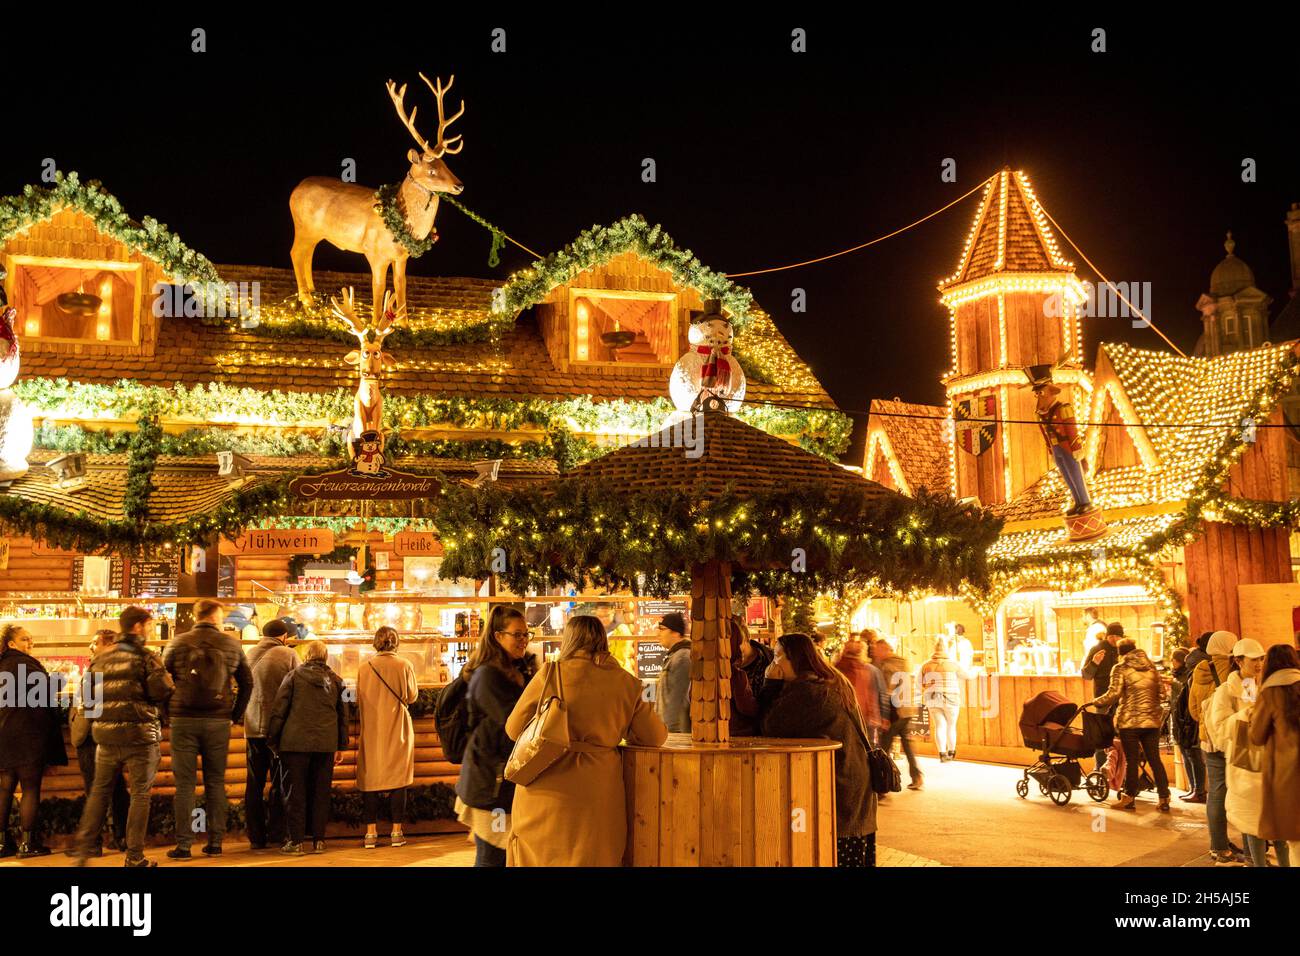 Le marché de Noël de Birmingham Francfort 2021.L'événement a été annulé en 2020 en raison des restrictions de Covid.Photo des attractions du marché de Victoria Square. Banque D'Images